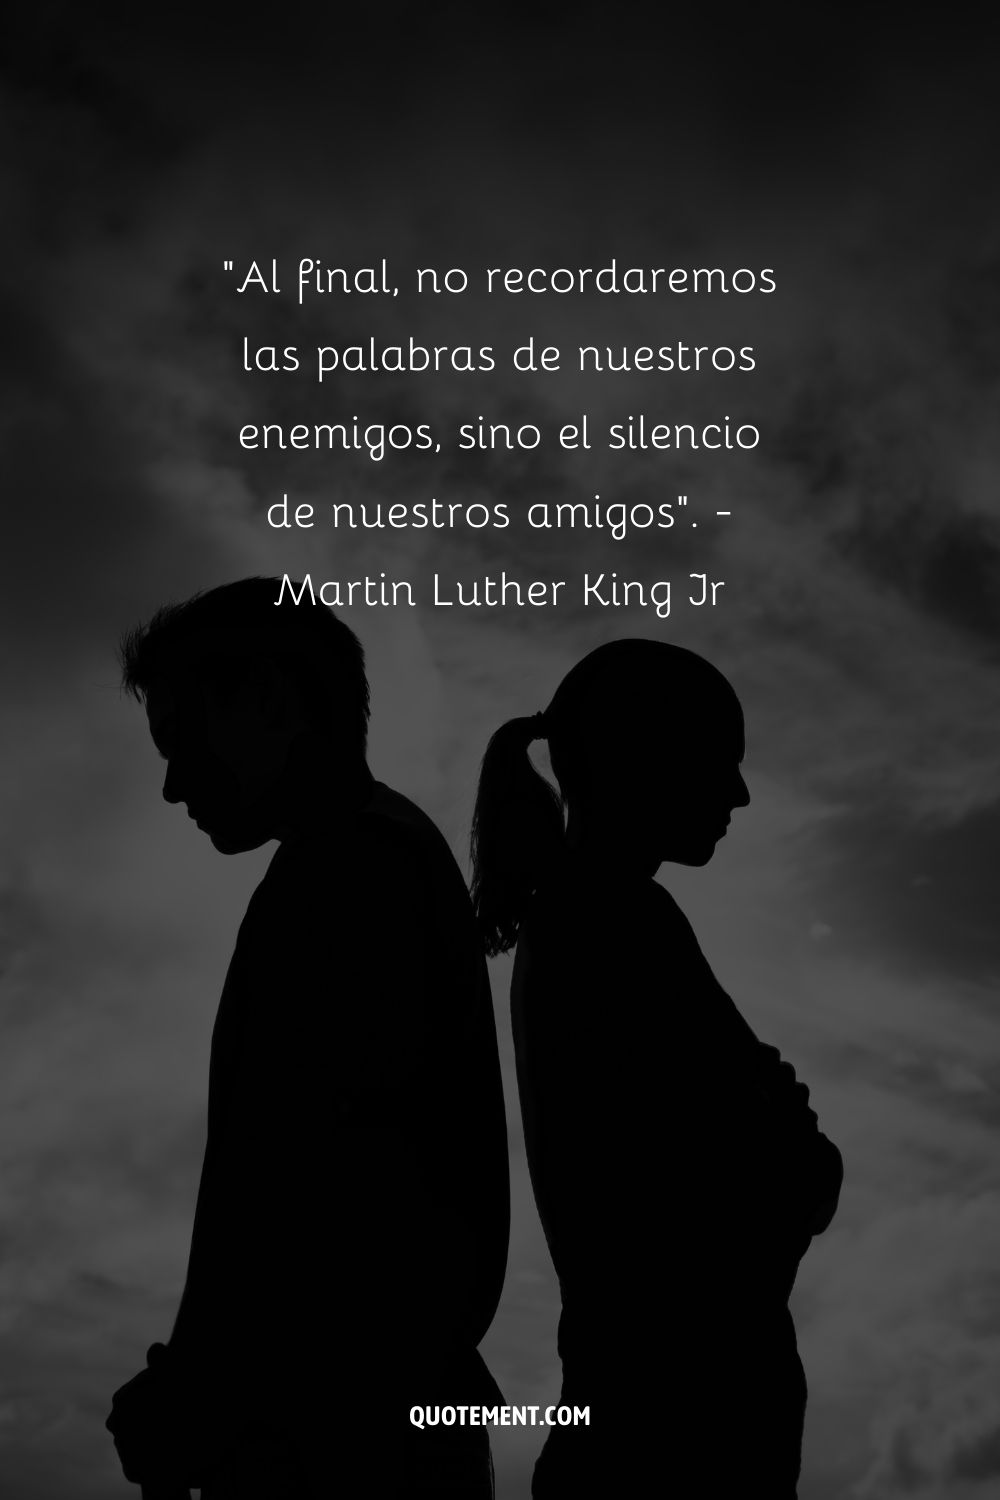 "Al final, no recordaremos las palabras de nuestros enemigos, sino el silencio de nuestros amigos". - Martin Luther King Jr